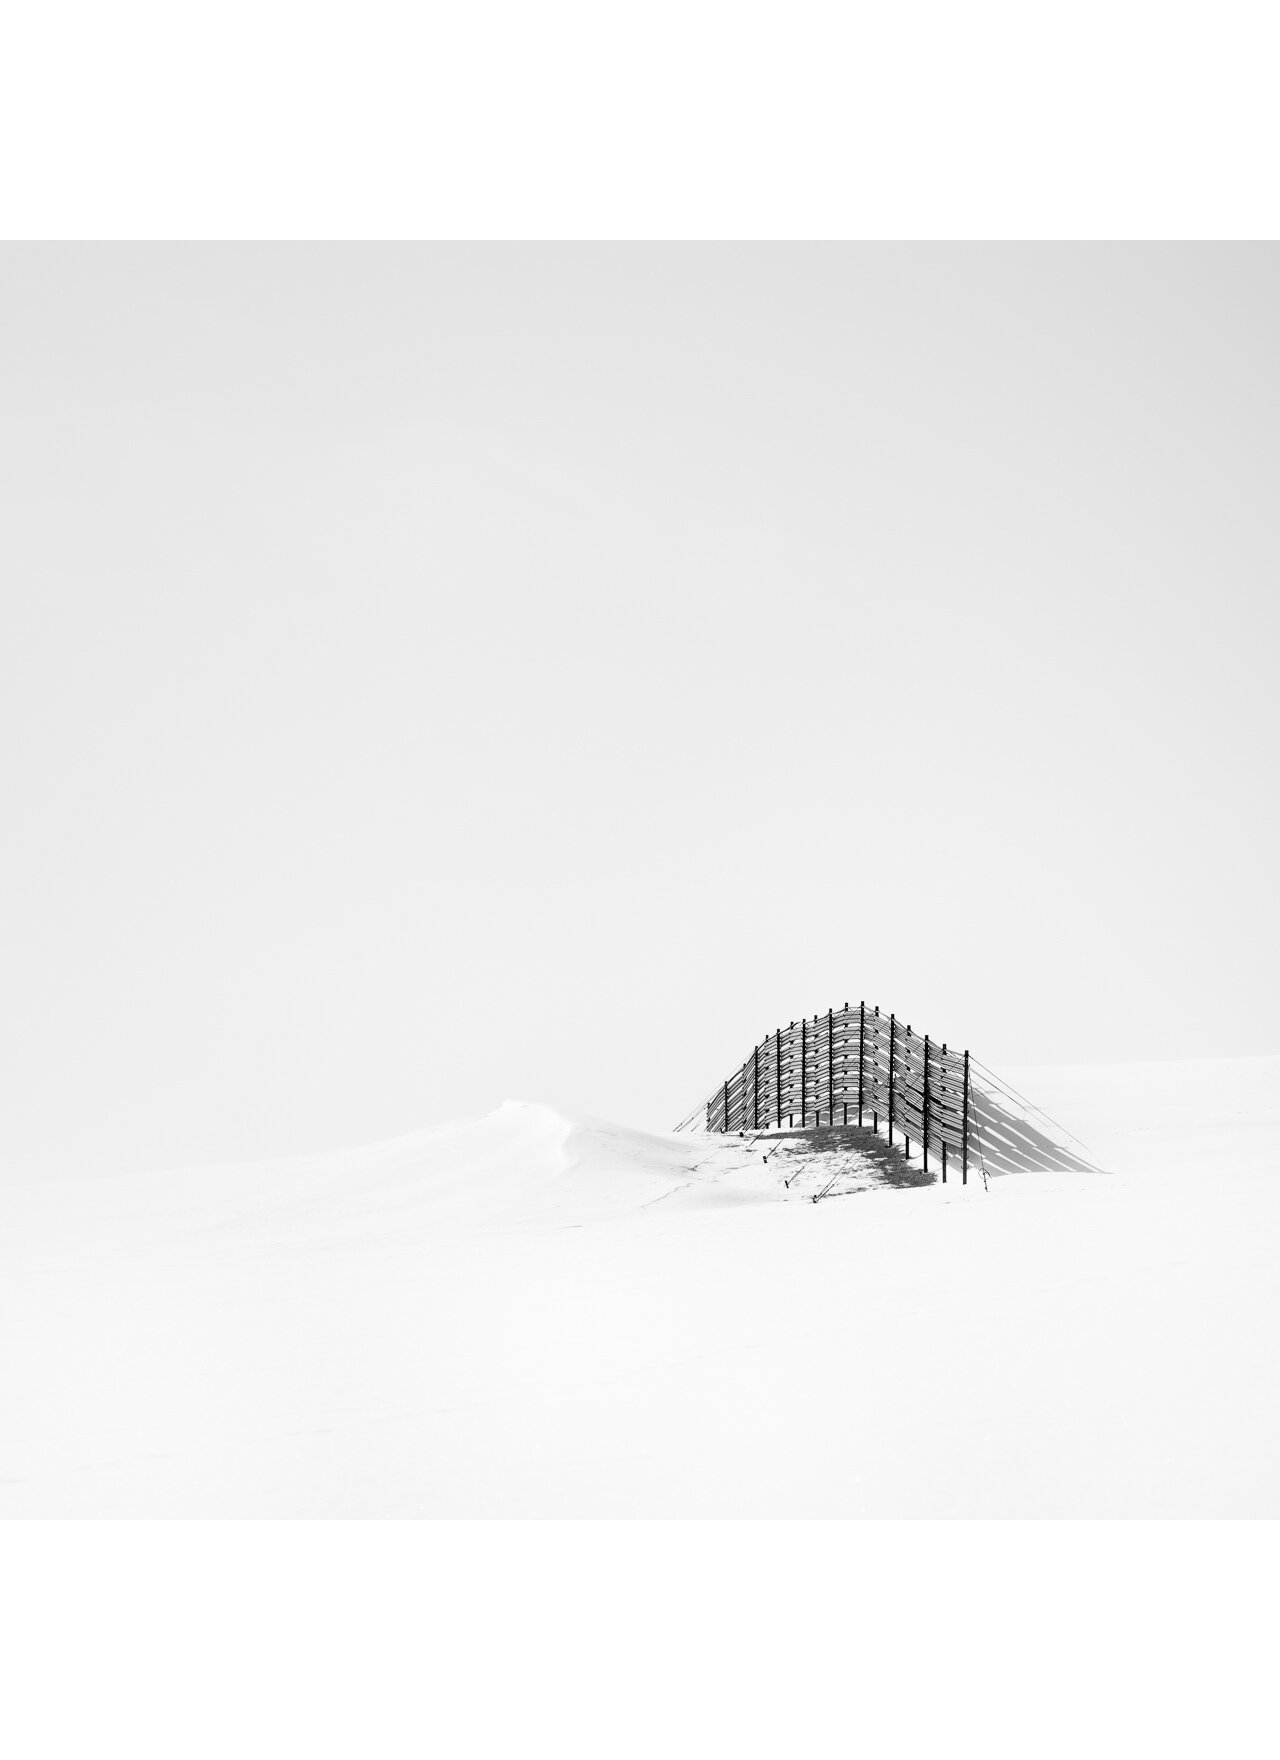 Snow Fence  Hokkaido 2020.jpg